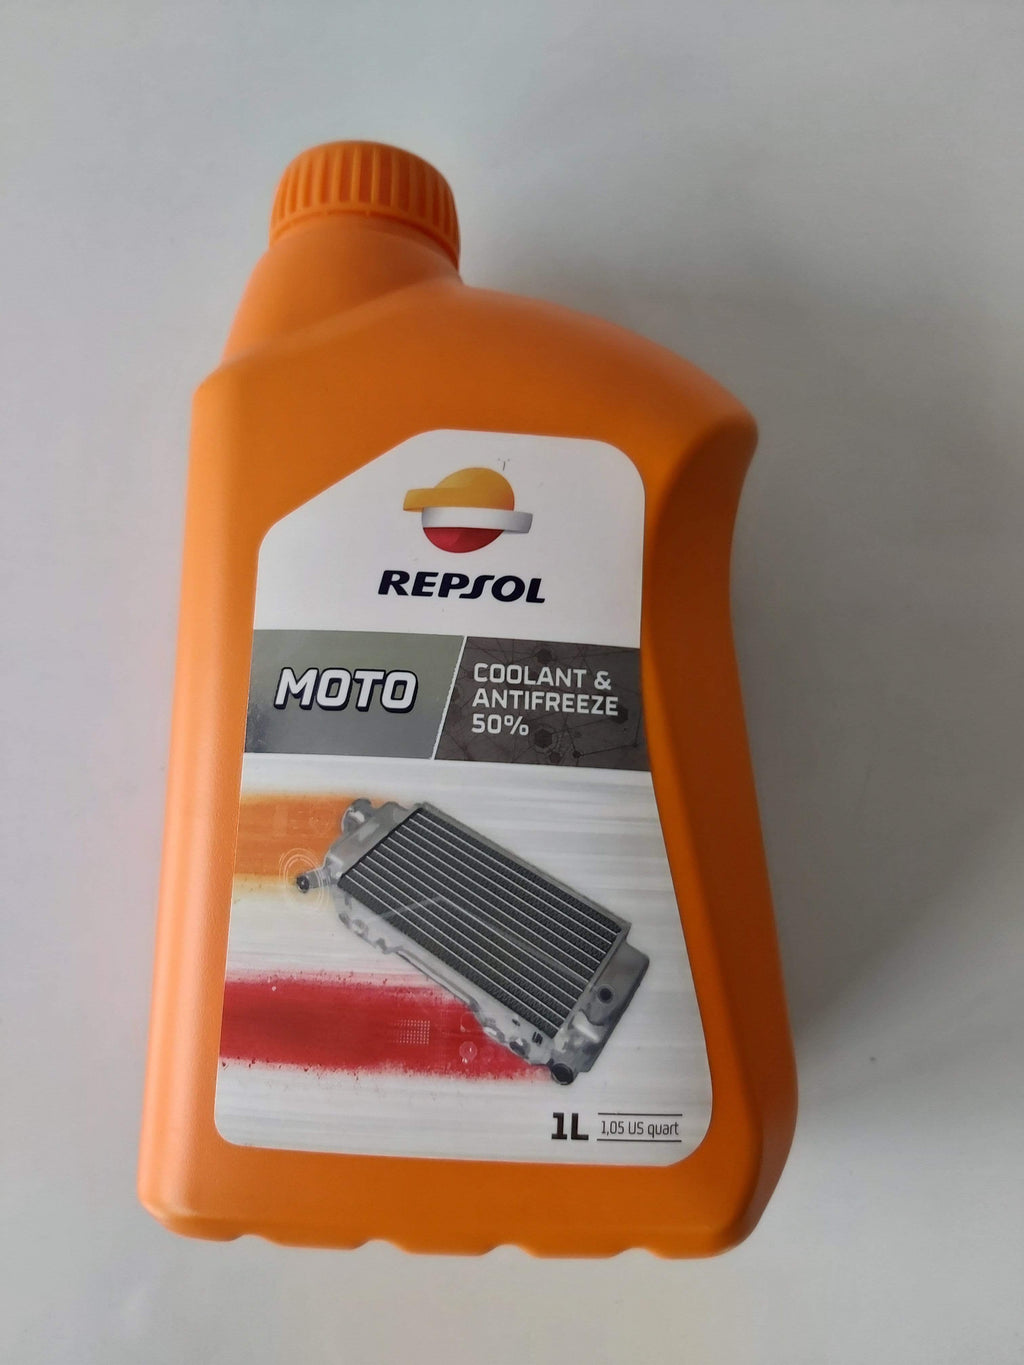 Spray de Silicona Repsol - Bermúdez Motor - Tienda de motos